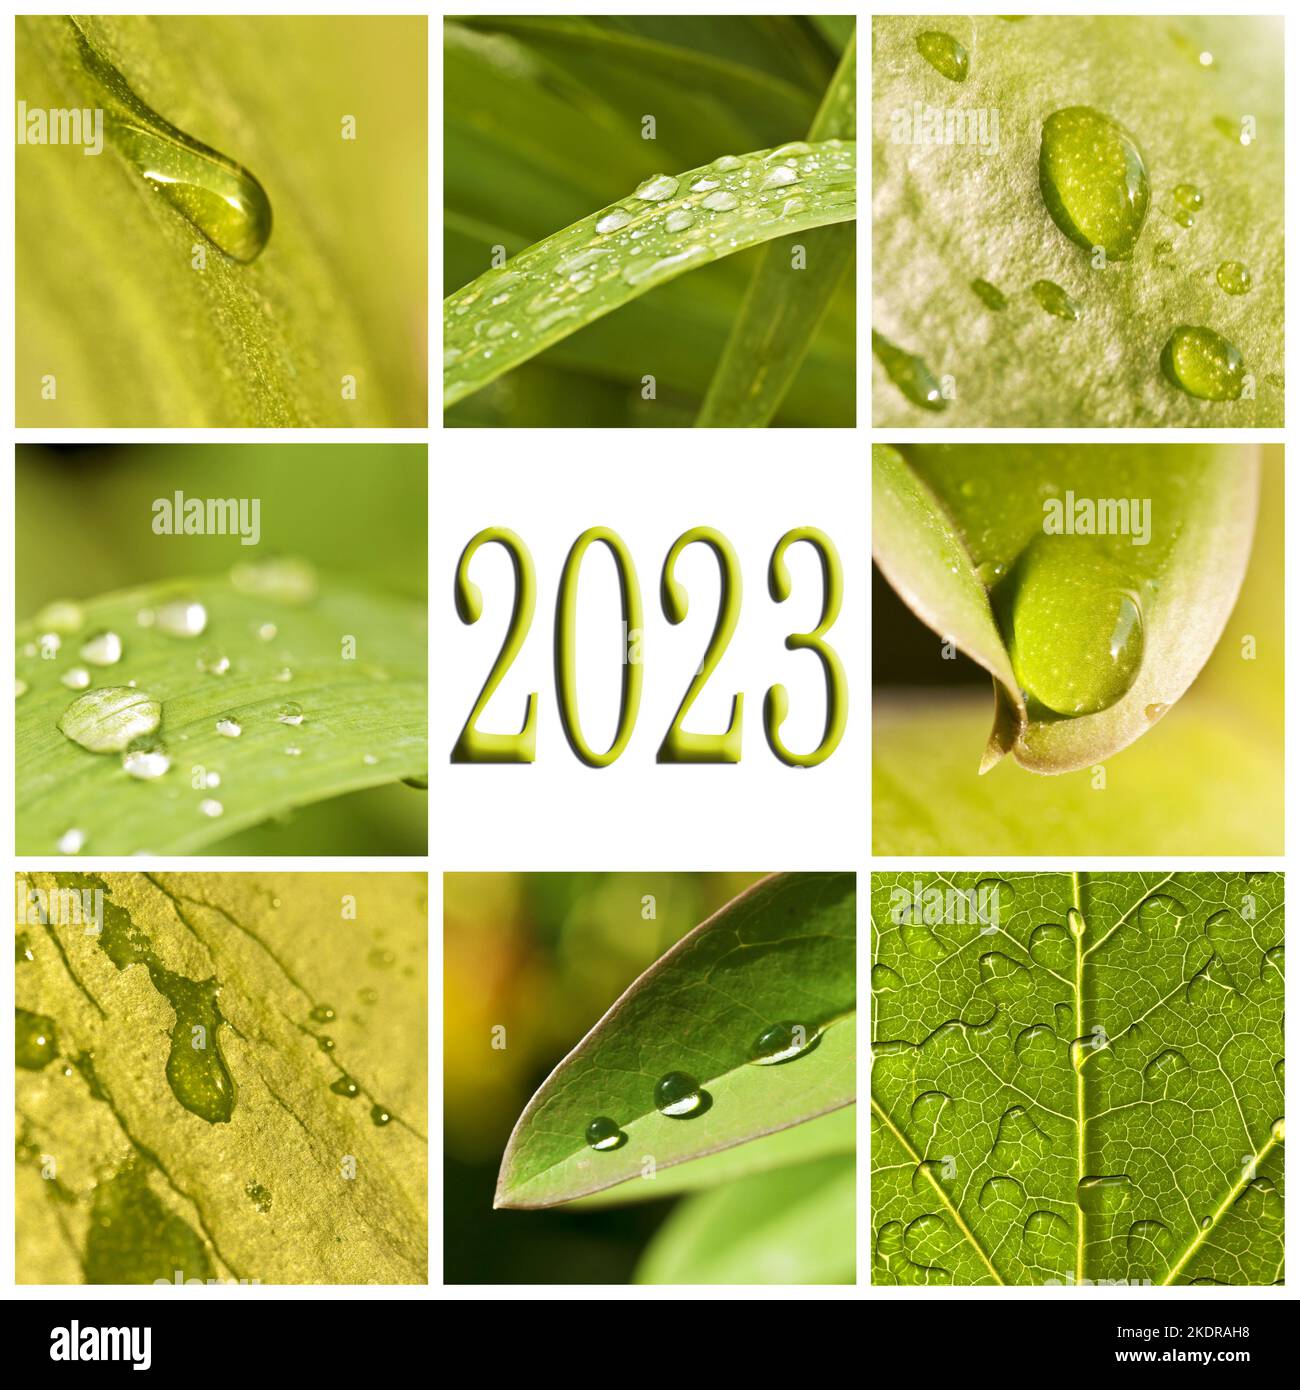 2023, feuilles vertes et raindrops photo collage, la nature et l'eau salutations Banque D'Images